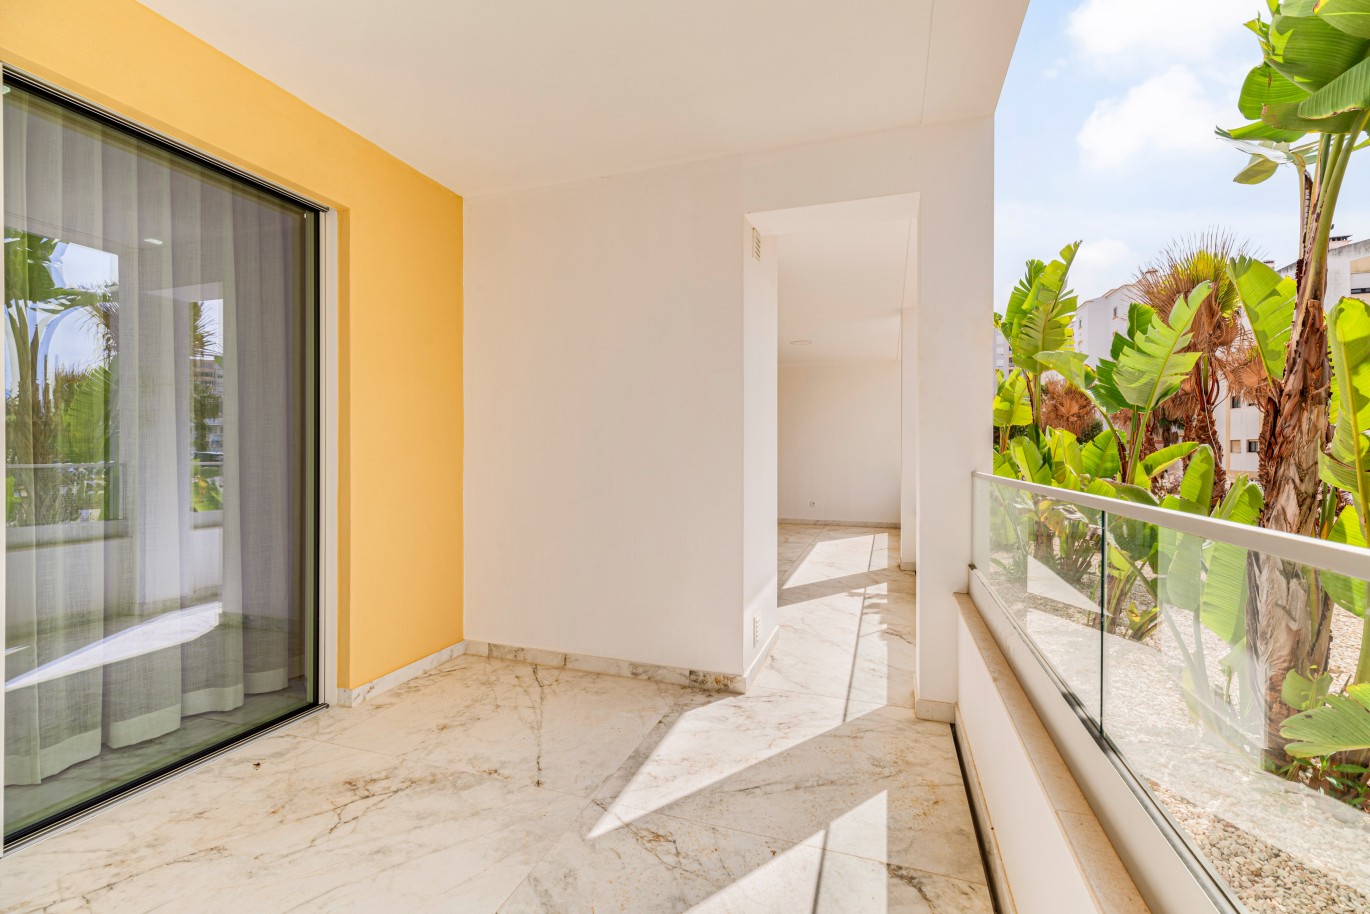 Apartamento, com terraço, para venda, em Lagos, Algarve_238178